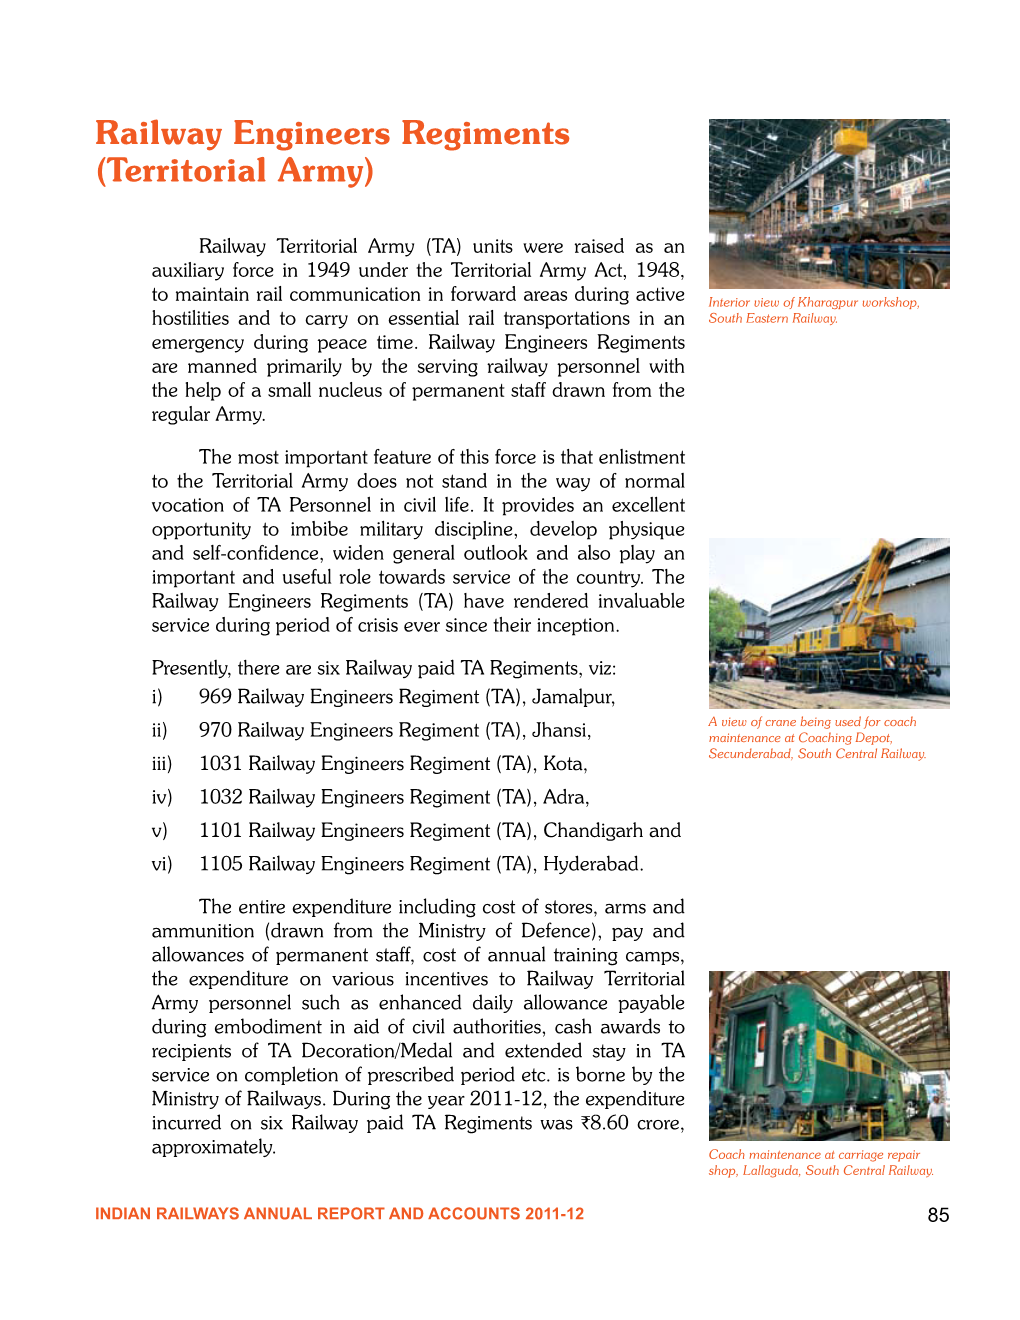 Railway Engineers Regiments (Territorial Army)